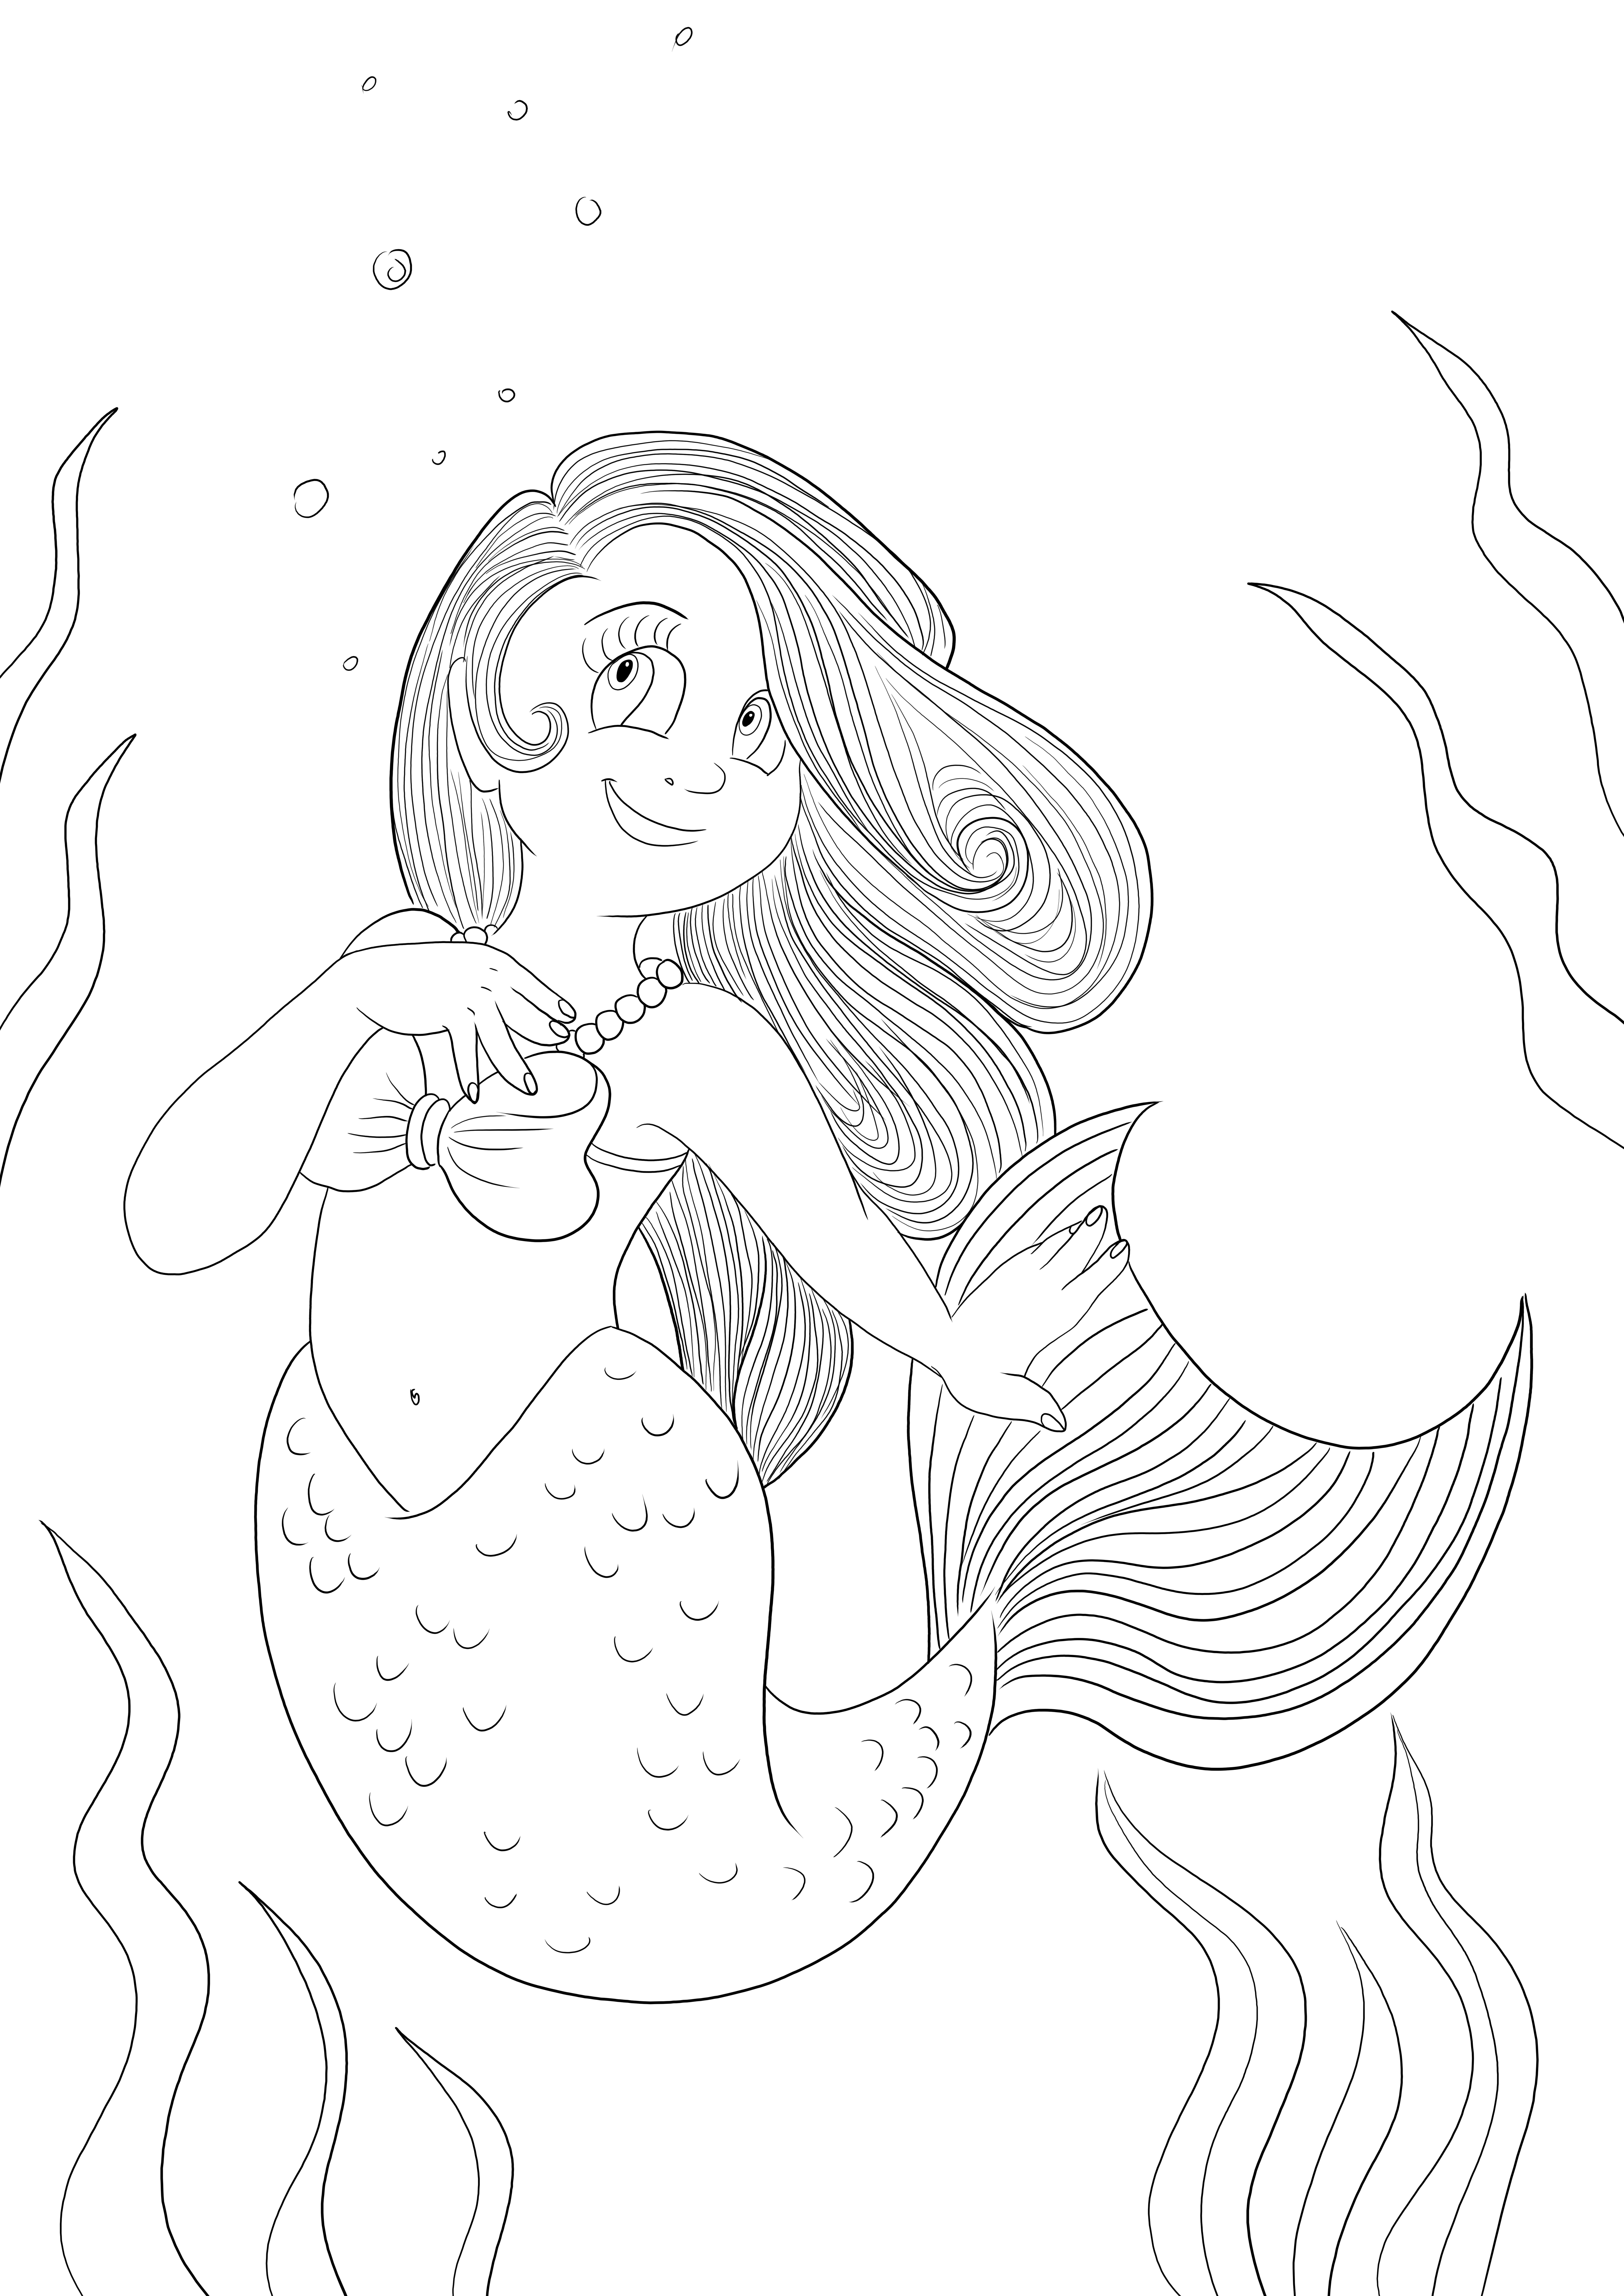 Lustige Meerjungfrau zum kostenlosen Ausmalen und Drucken von Bildern für Kinder jeden Alters